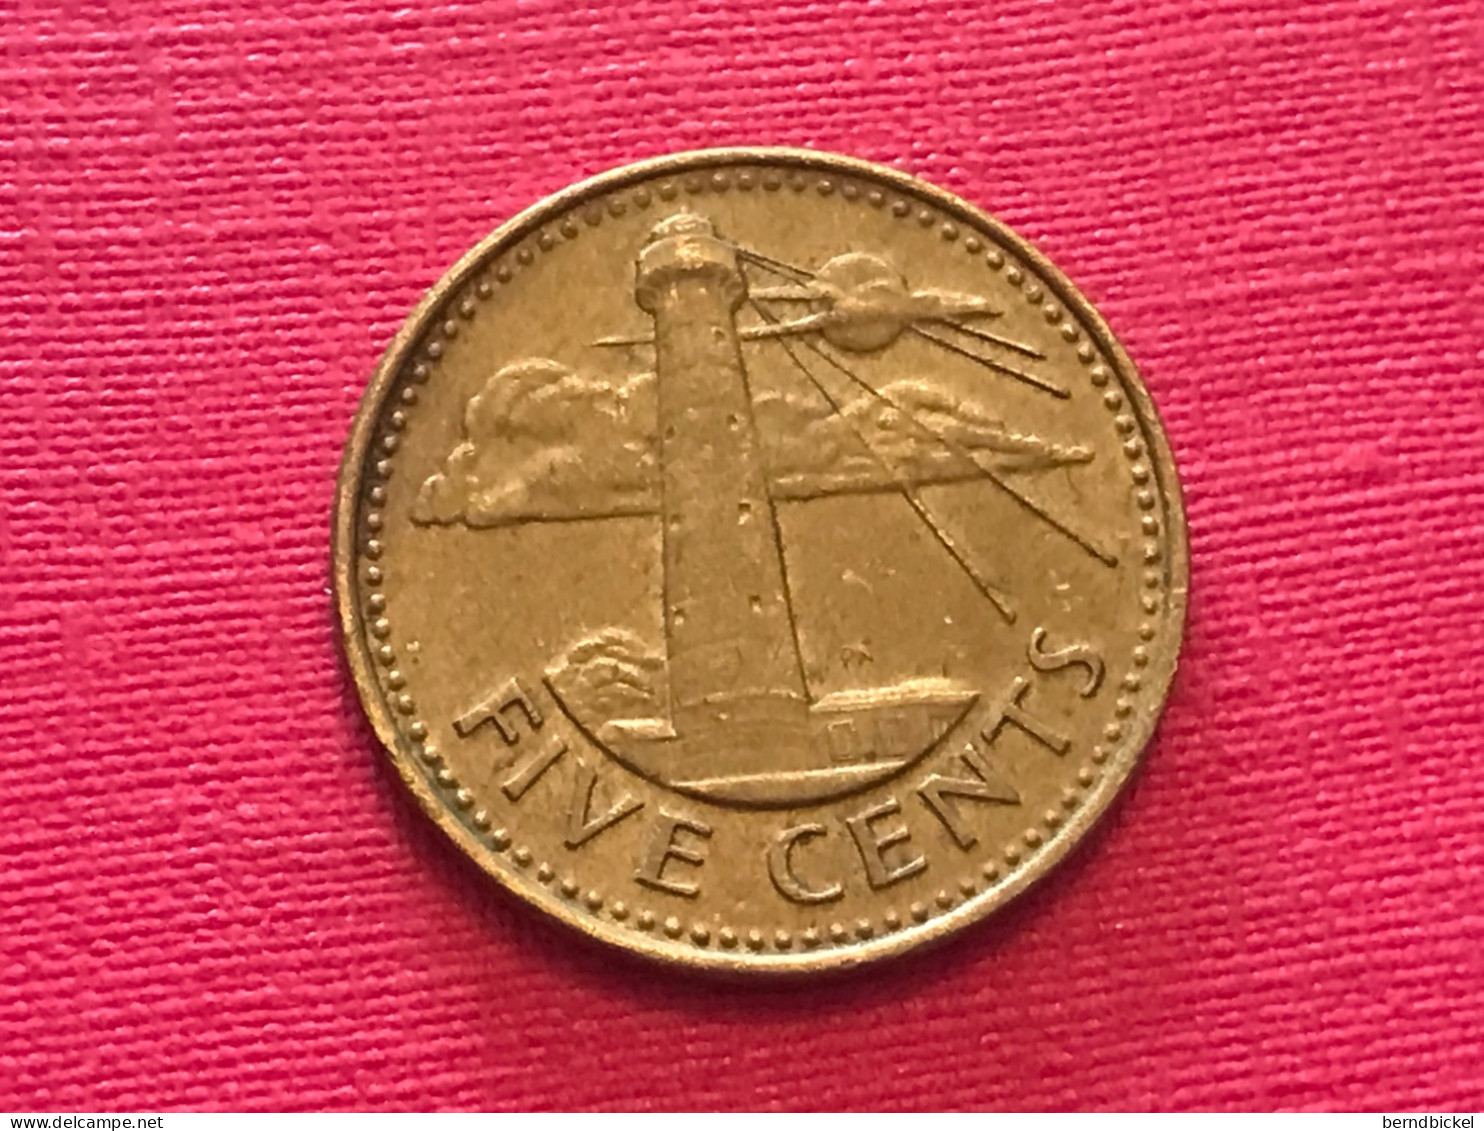 Münze Münzen Umlaufmünze Barbados 5 Cents 1988 - Barbados (Barbuda)